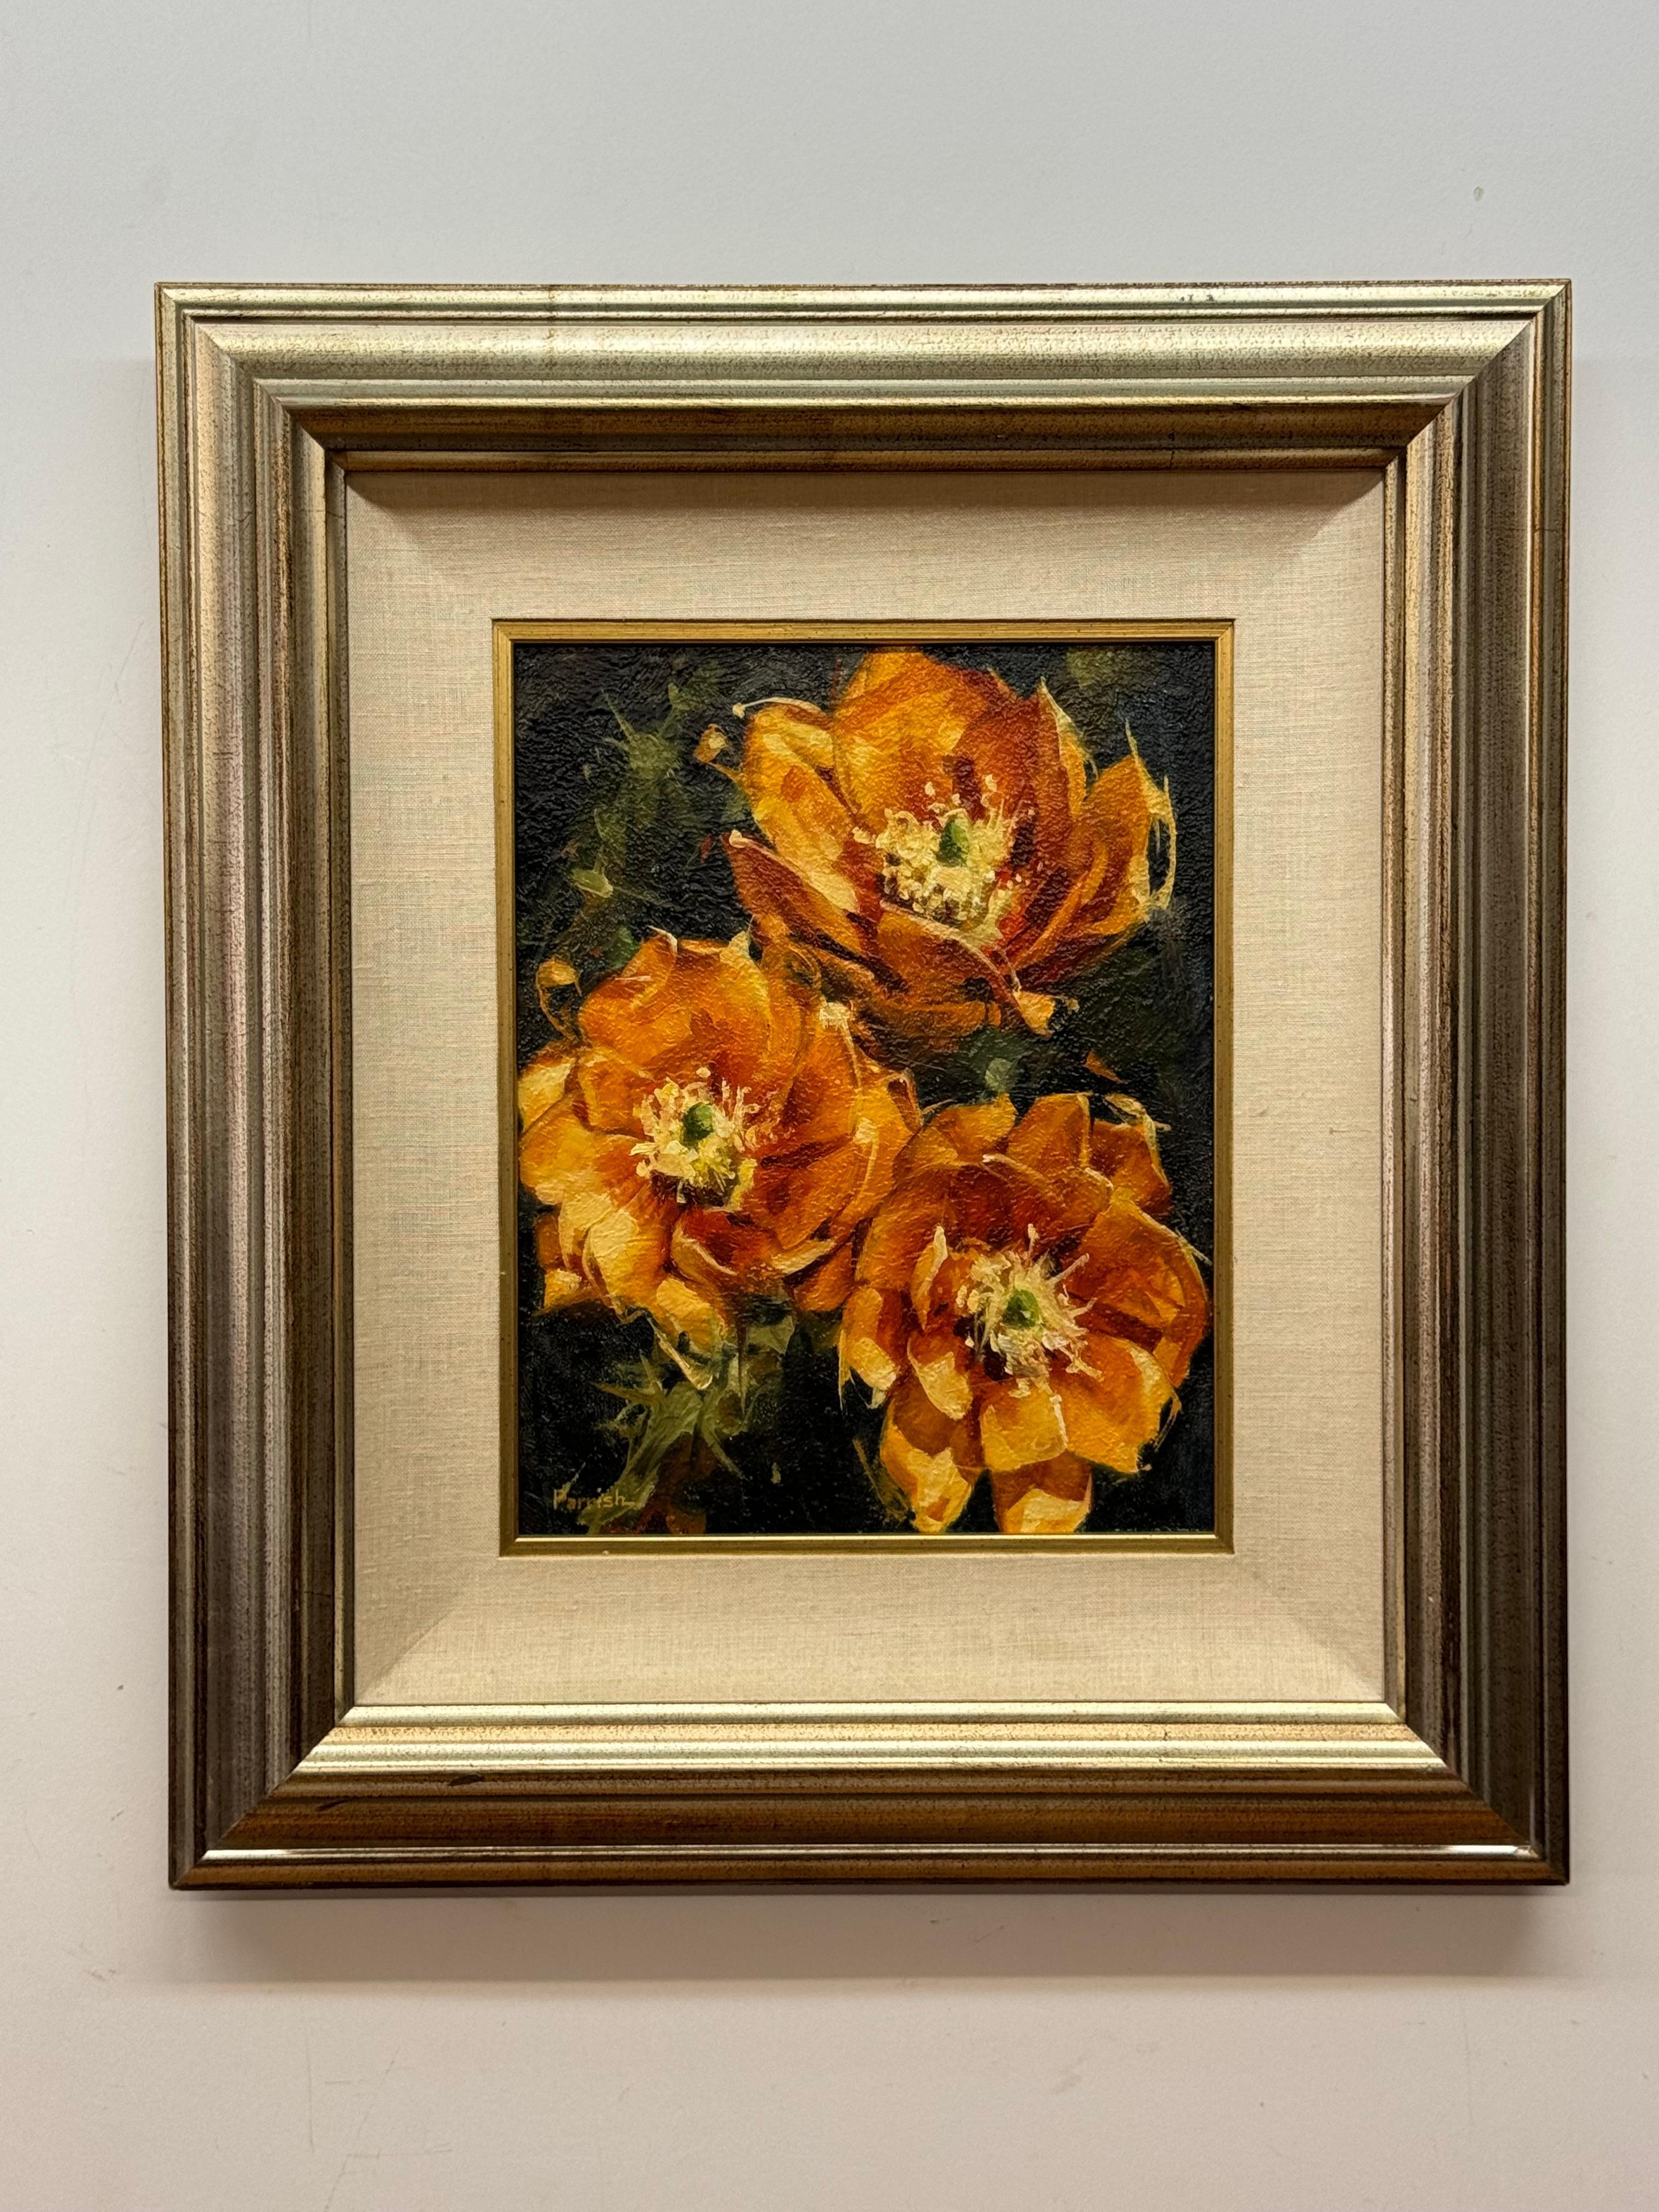 Herbert Parrish "nach dem regen" florales stillleben

Ringelblumen

Öl auf Masonit

11 x 14 ungerahmt, 21 x 24 gerahmt